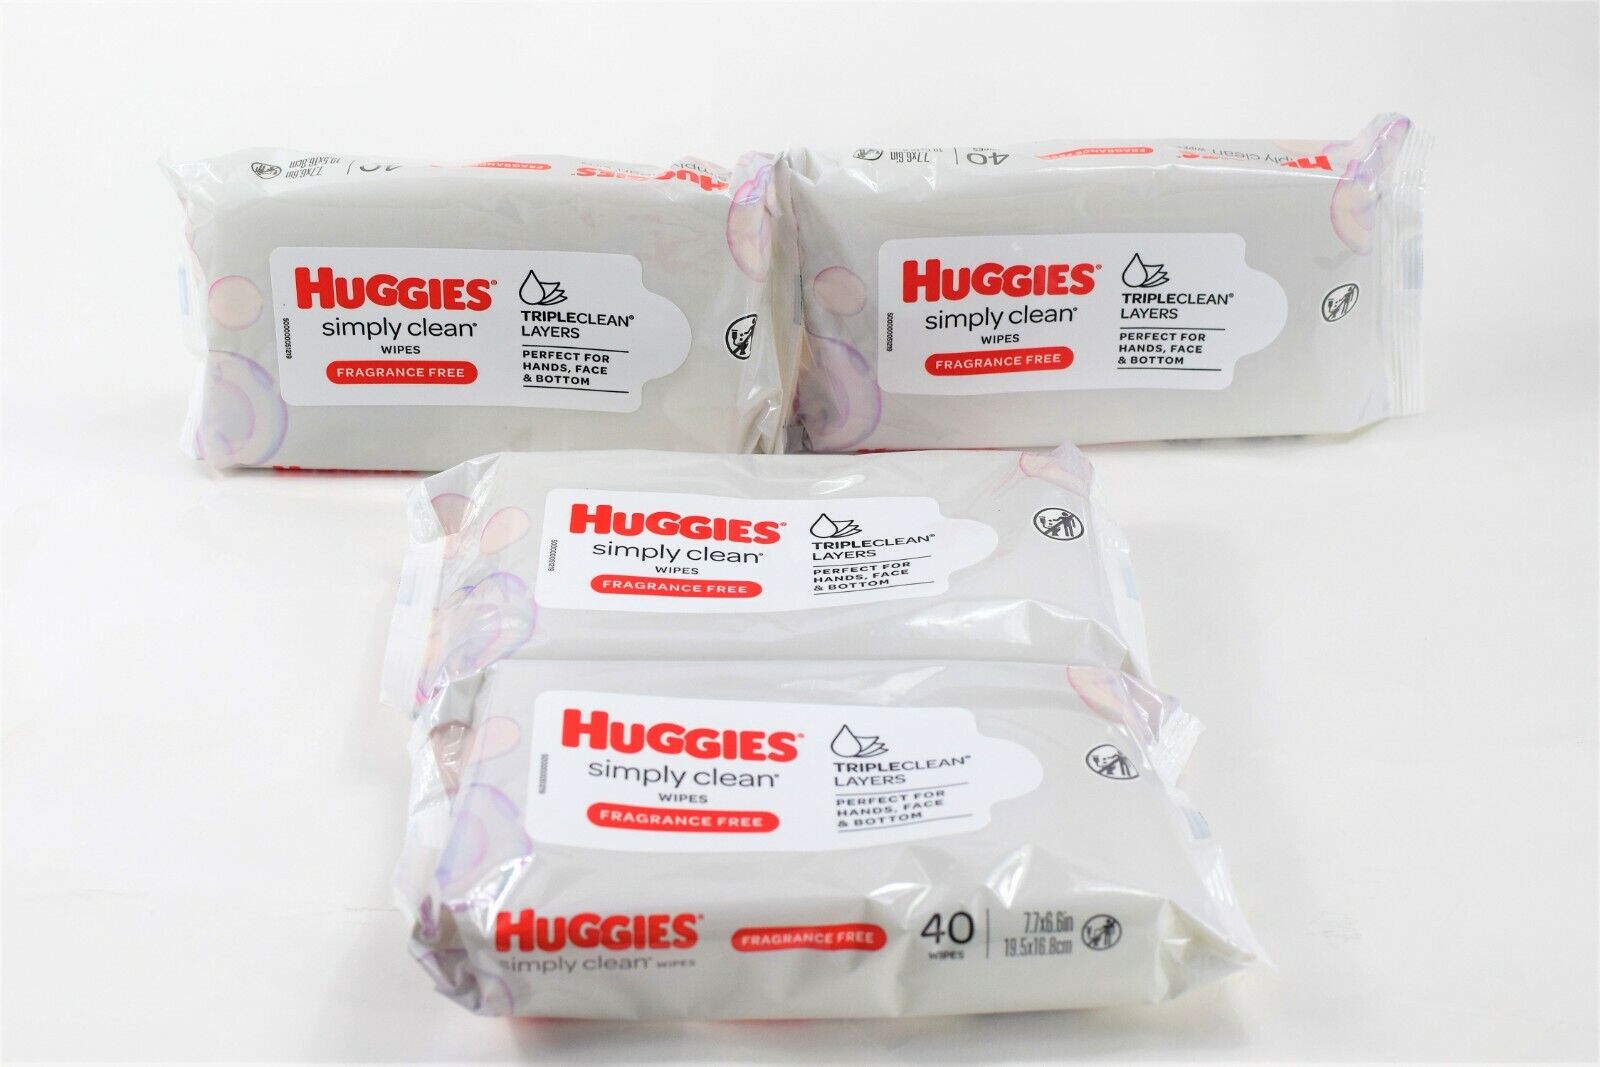 4x Huggies Simply Clean Wipes Triple Clean Fragrance Free 40 Pack Exp 09/2022 Huggies